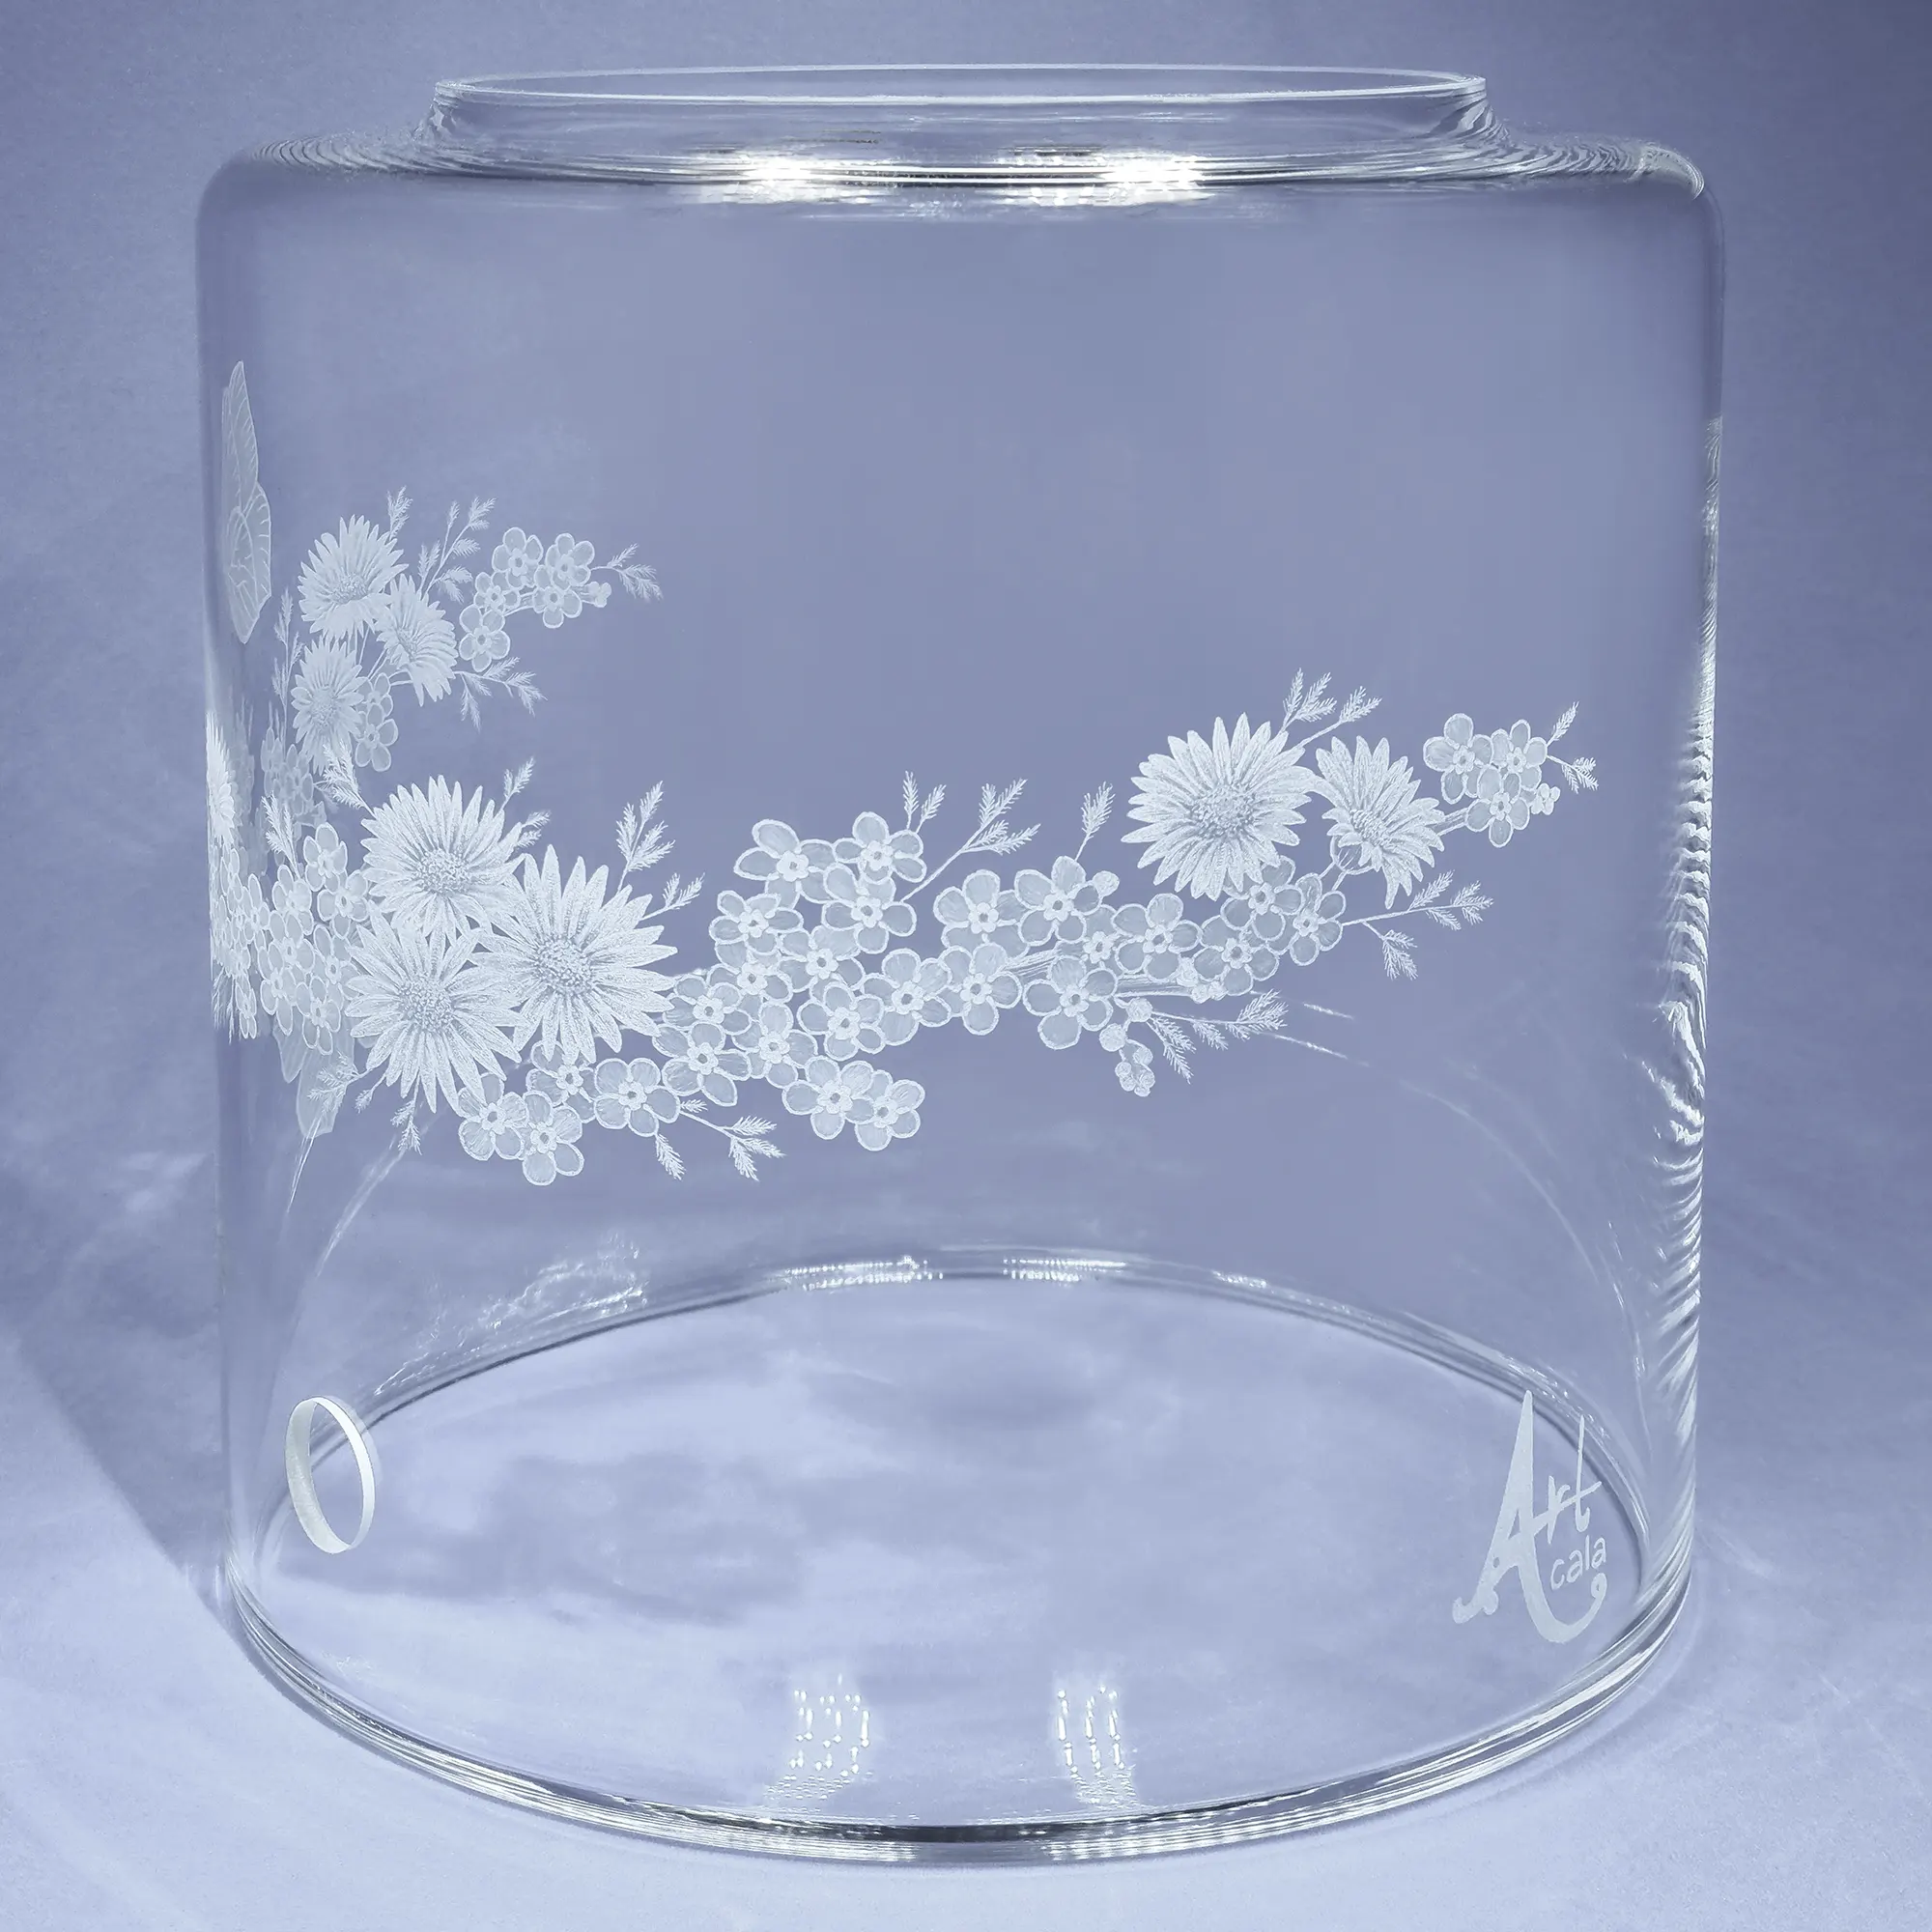 Vorratstank aus Glas für einen Acala Wasserfilter in klarem Glas mit dem gravierten Kranz,umlaufende um das runde Glas.In dem Granz sind Vergissmeinnicht, Schmetterlinge und Gänseblümchen.Rechte Ansicht.